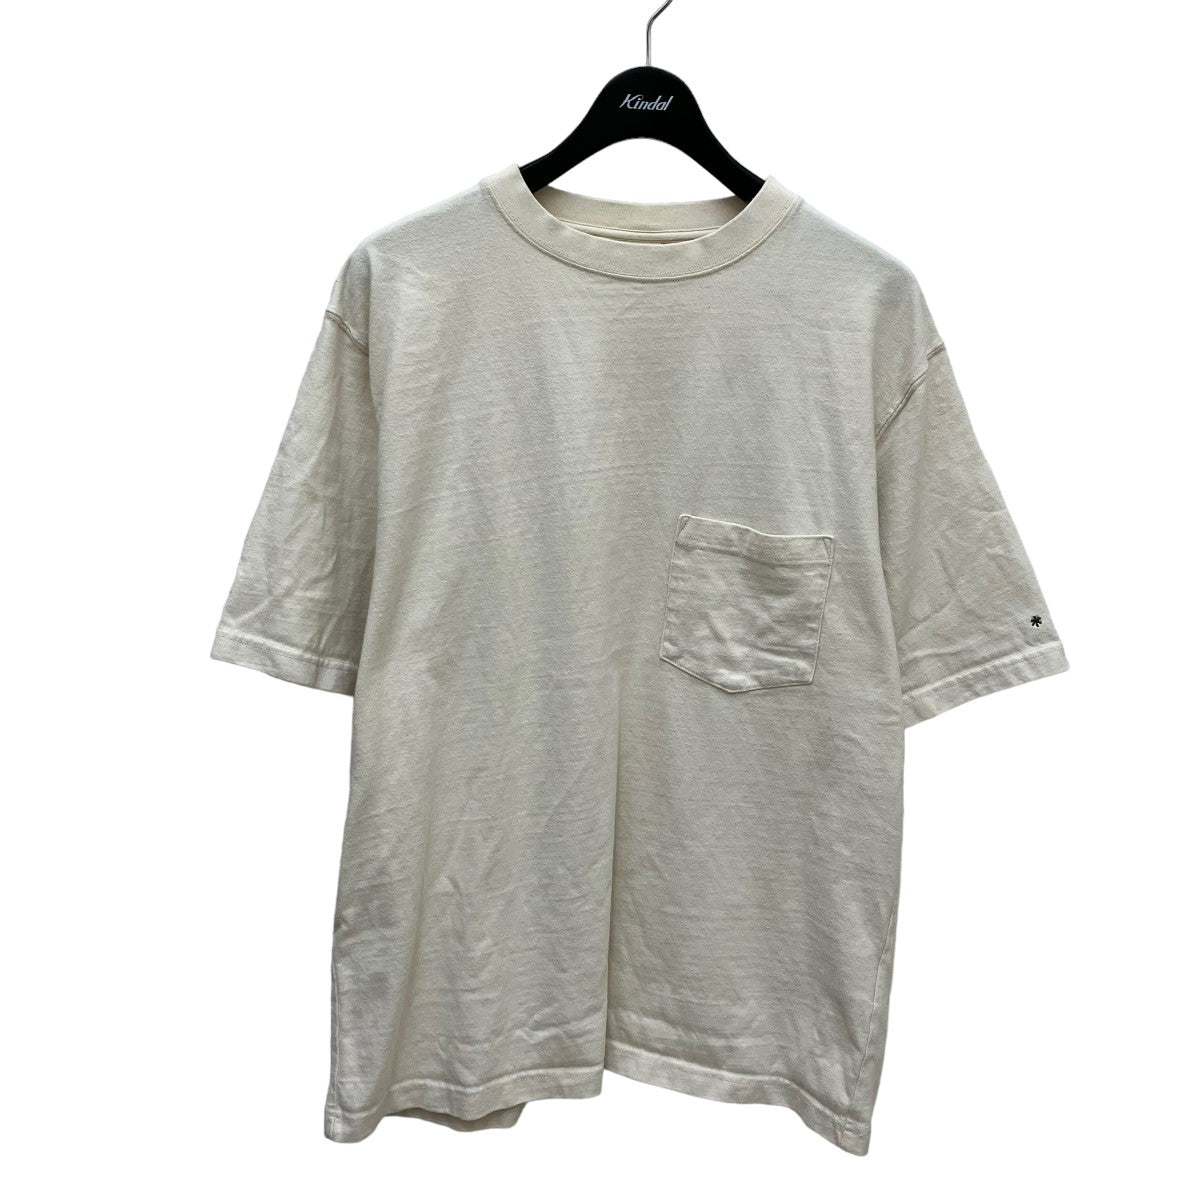 Snow peak(スノーピーク) TシャツTS 22SU401 イエロー サイズ:L メンズ Tシャツ・カットソー 中古・古着